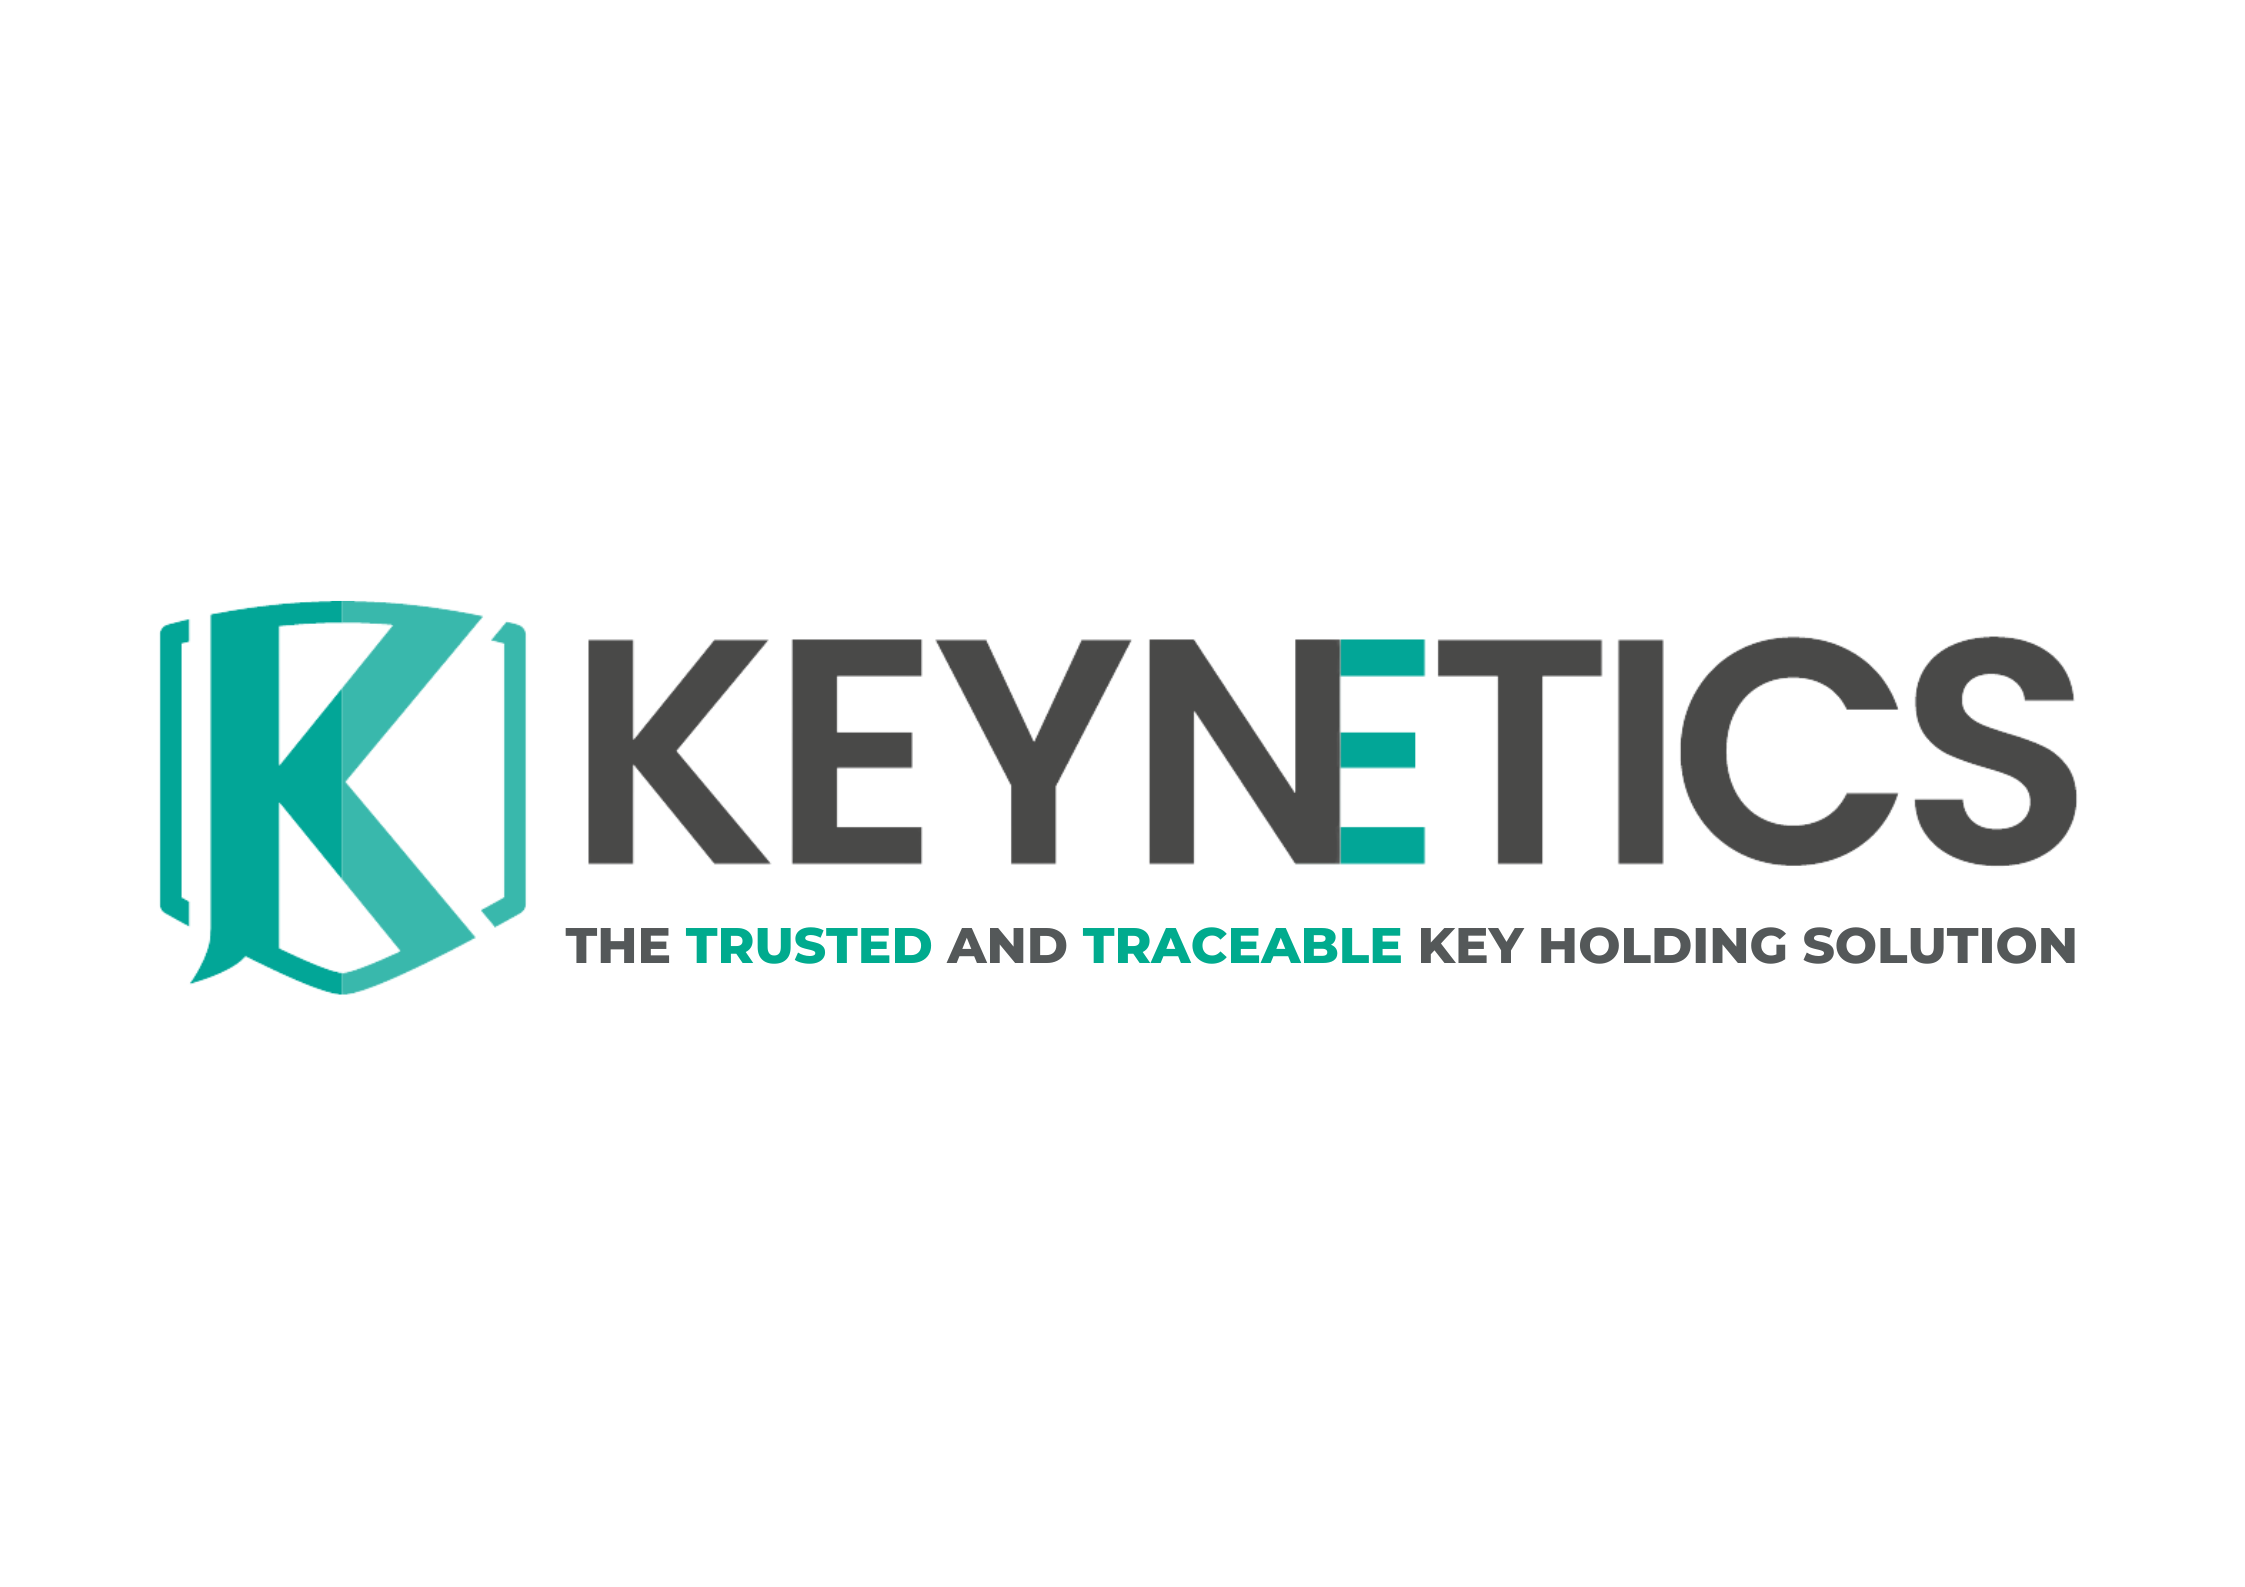 Keynetics logo